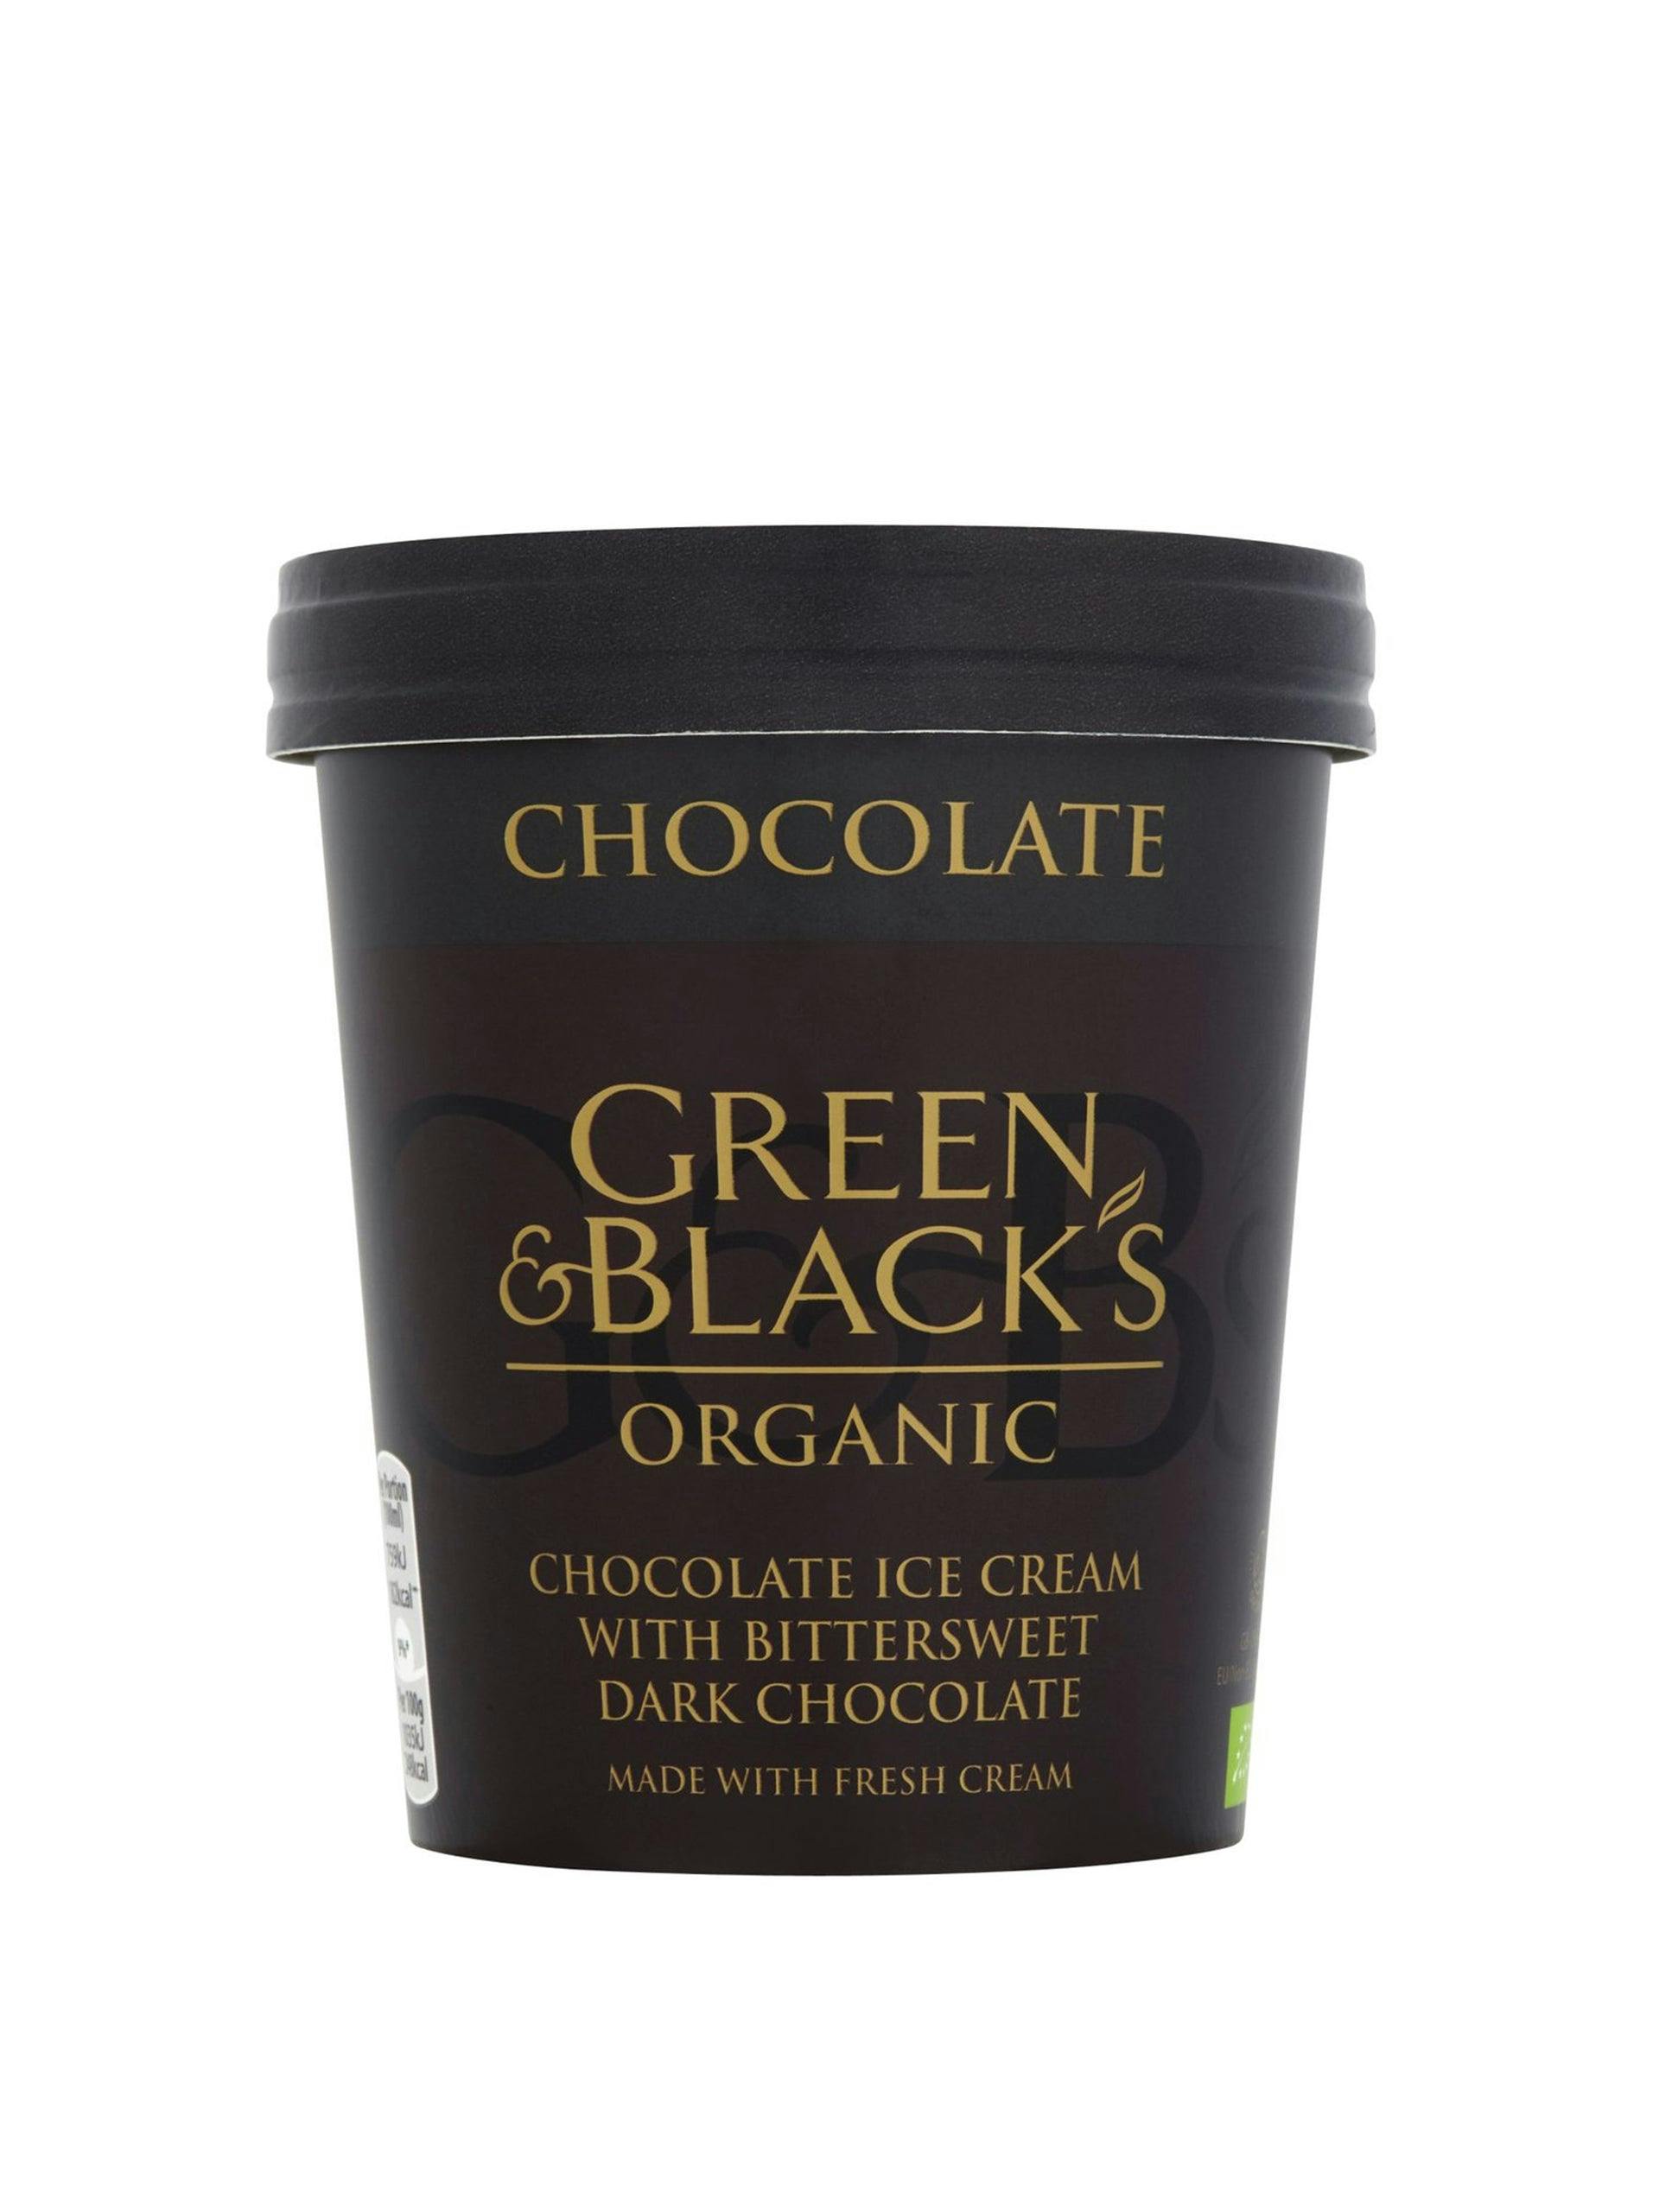 Chocolate ice cream with bittersweet dark chocolate